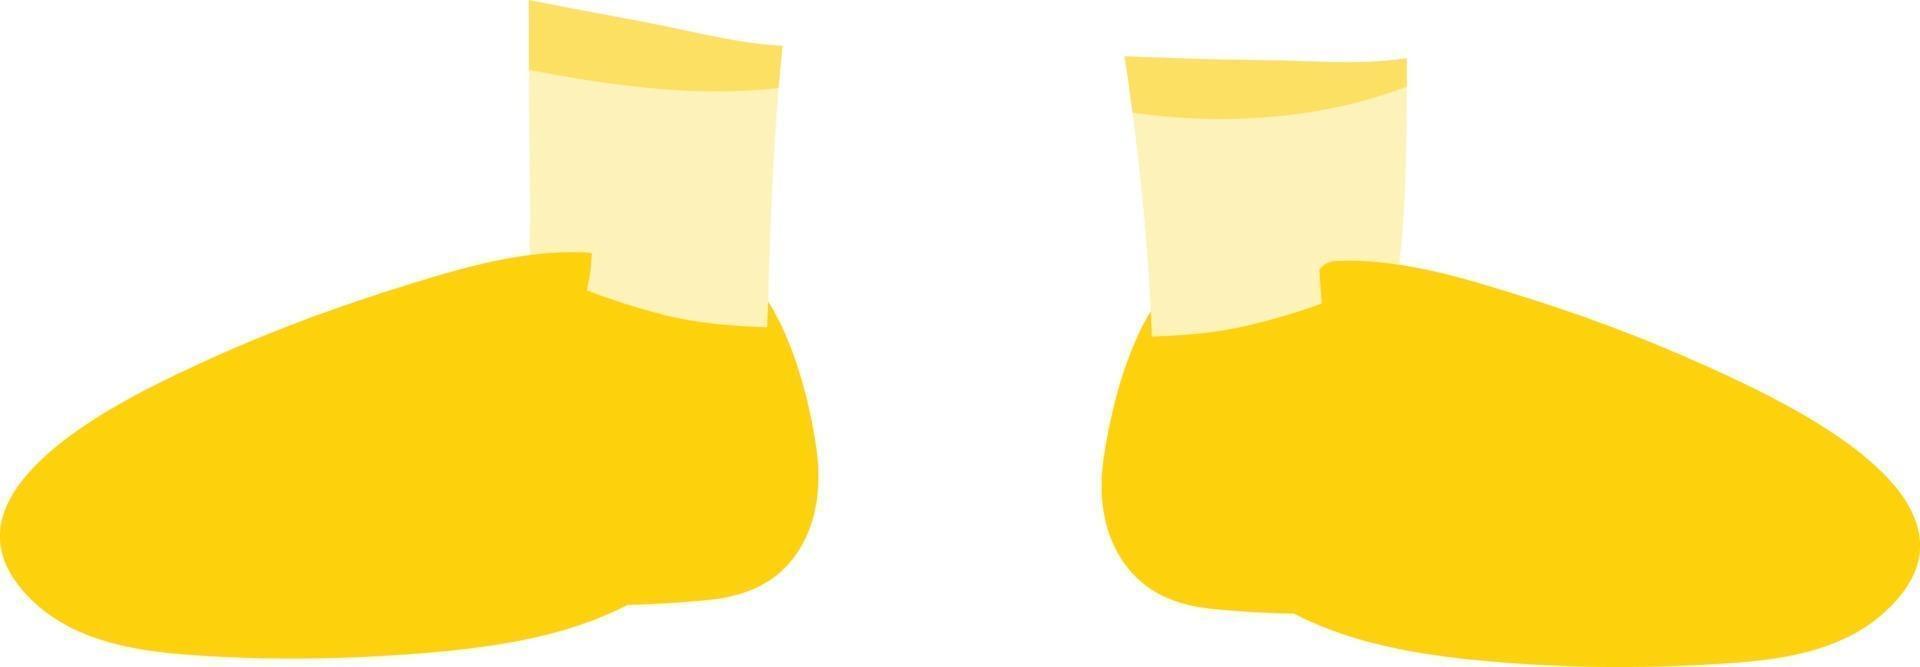 casco da rugby giallo vettore isolato abbigliamento sportivo grafica vettoriale.